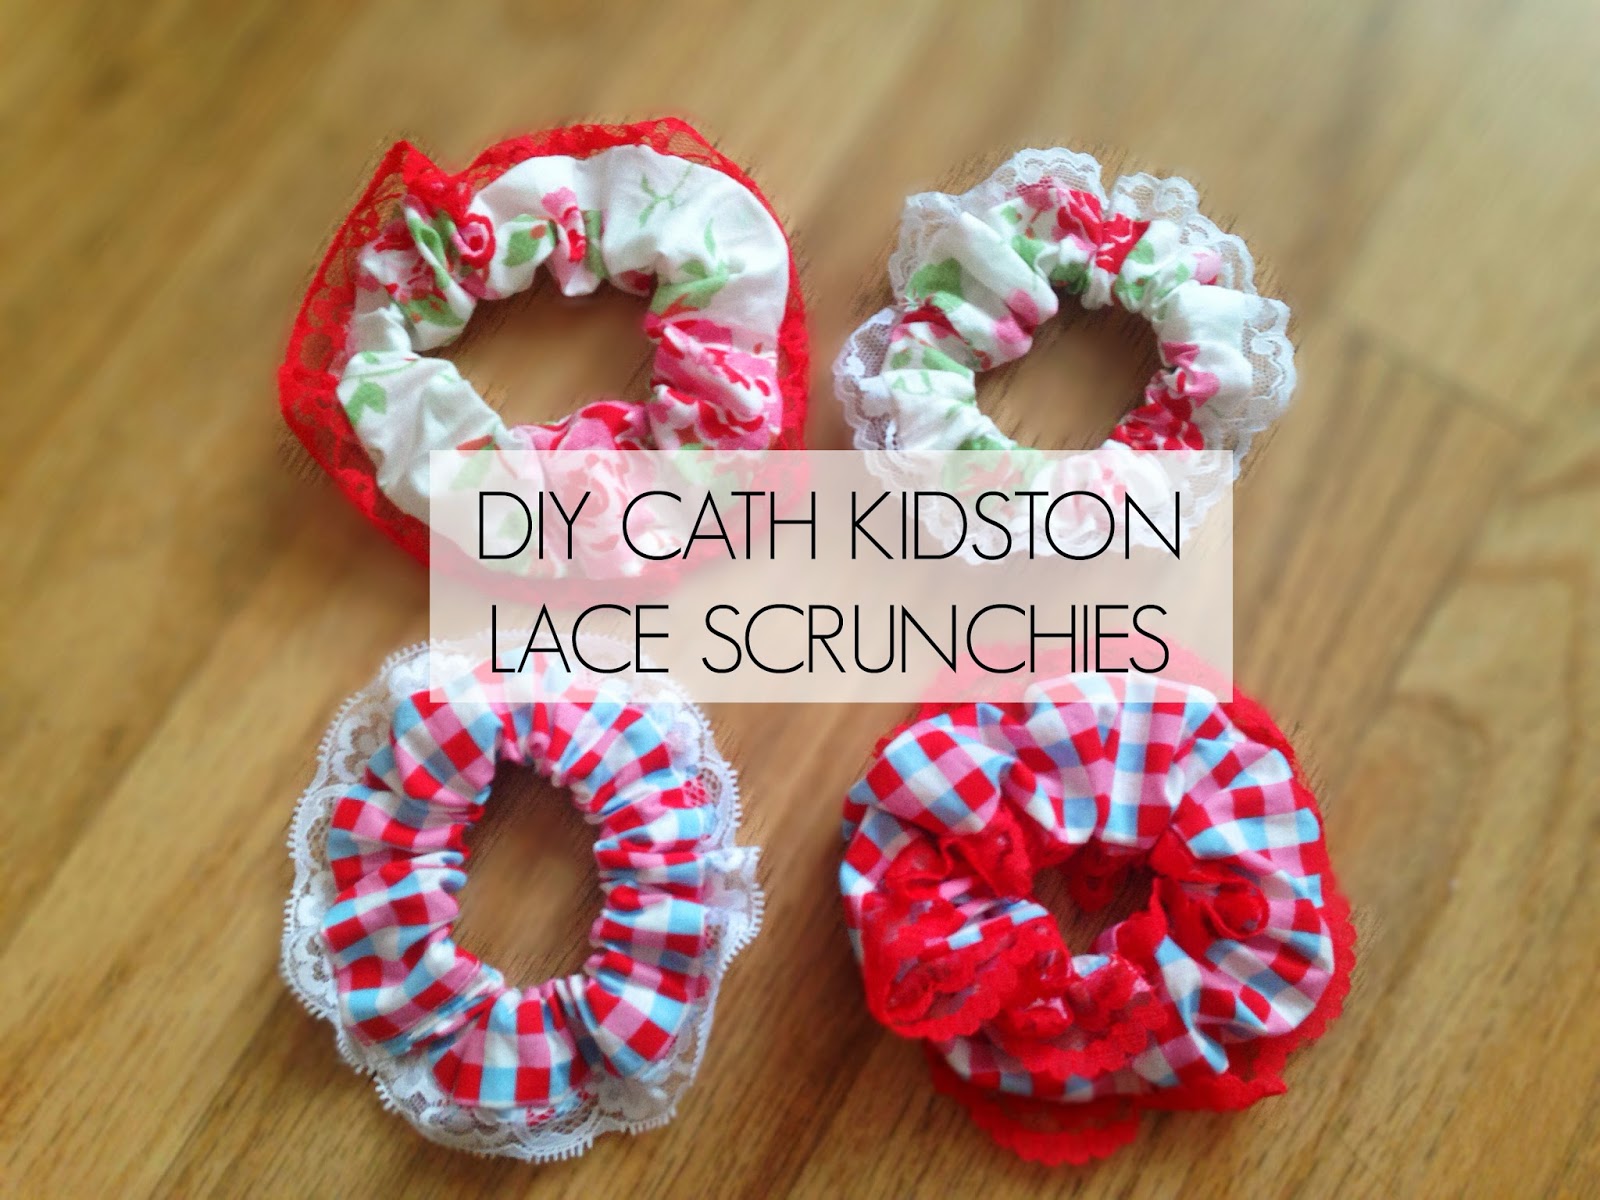 How can I make scrunchies?